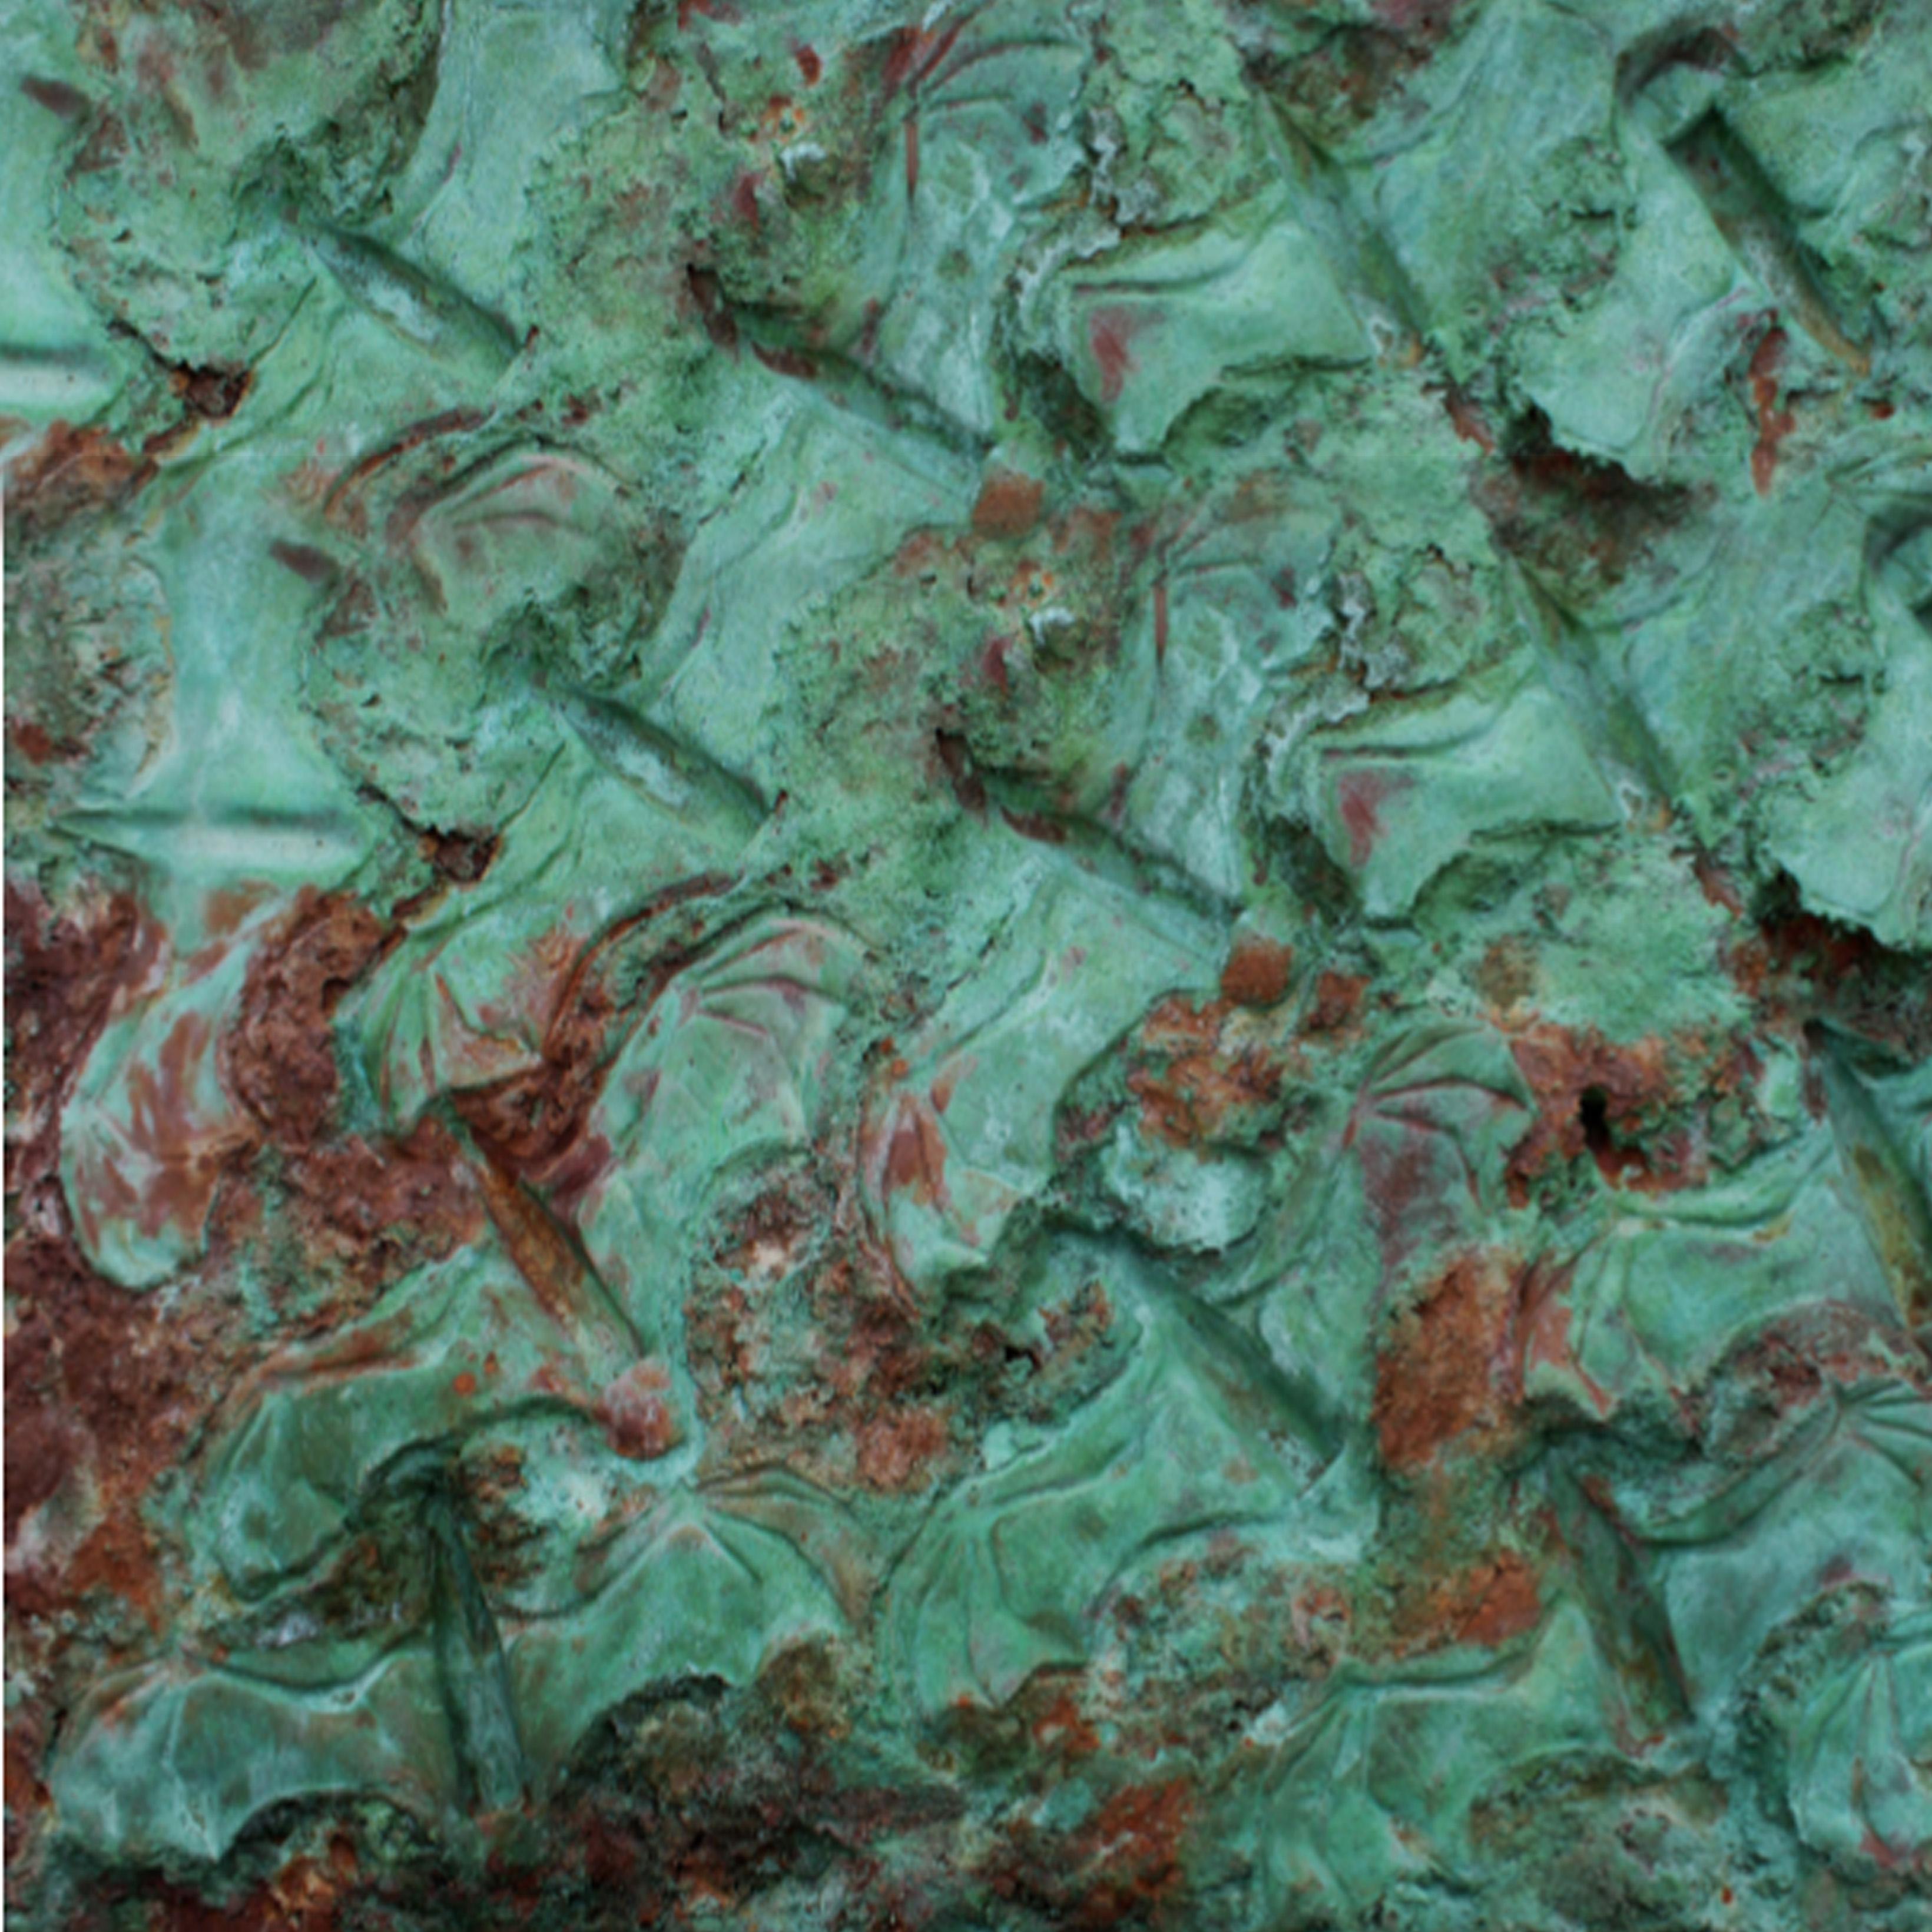 Abdeljalil El Souli
Sans titre, 2015
Sculpture argile zt fibre de verre
240 x 355 x 21 cm